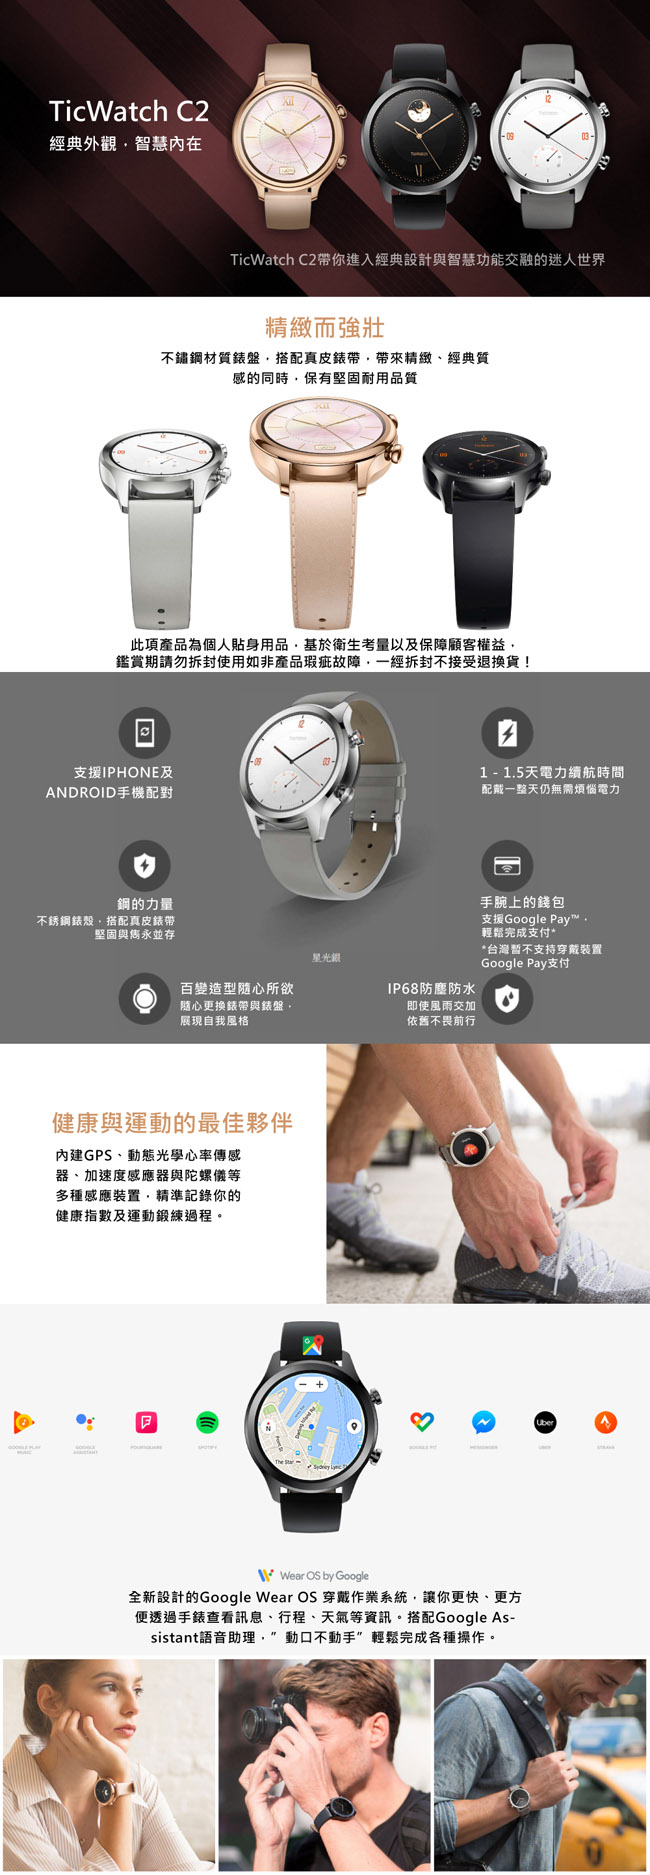 TicWatch C2 SmartWatch 智慧手錶-莫蘭迪粉